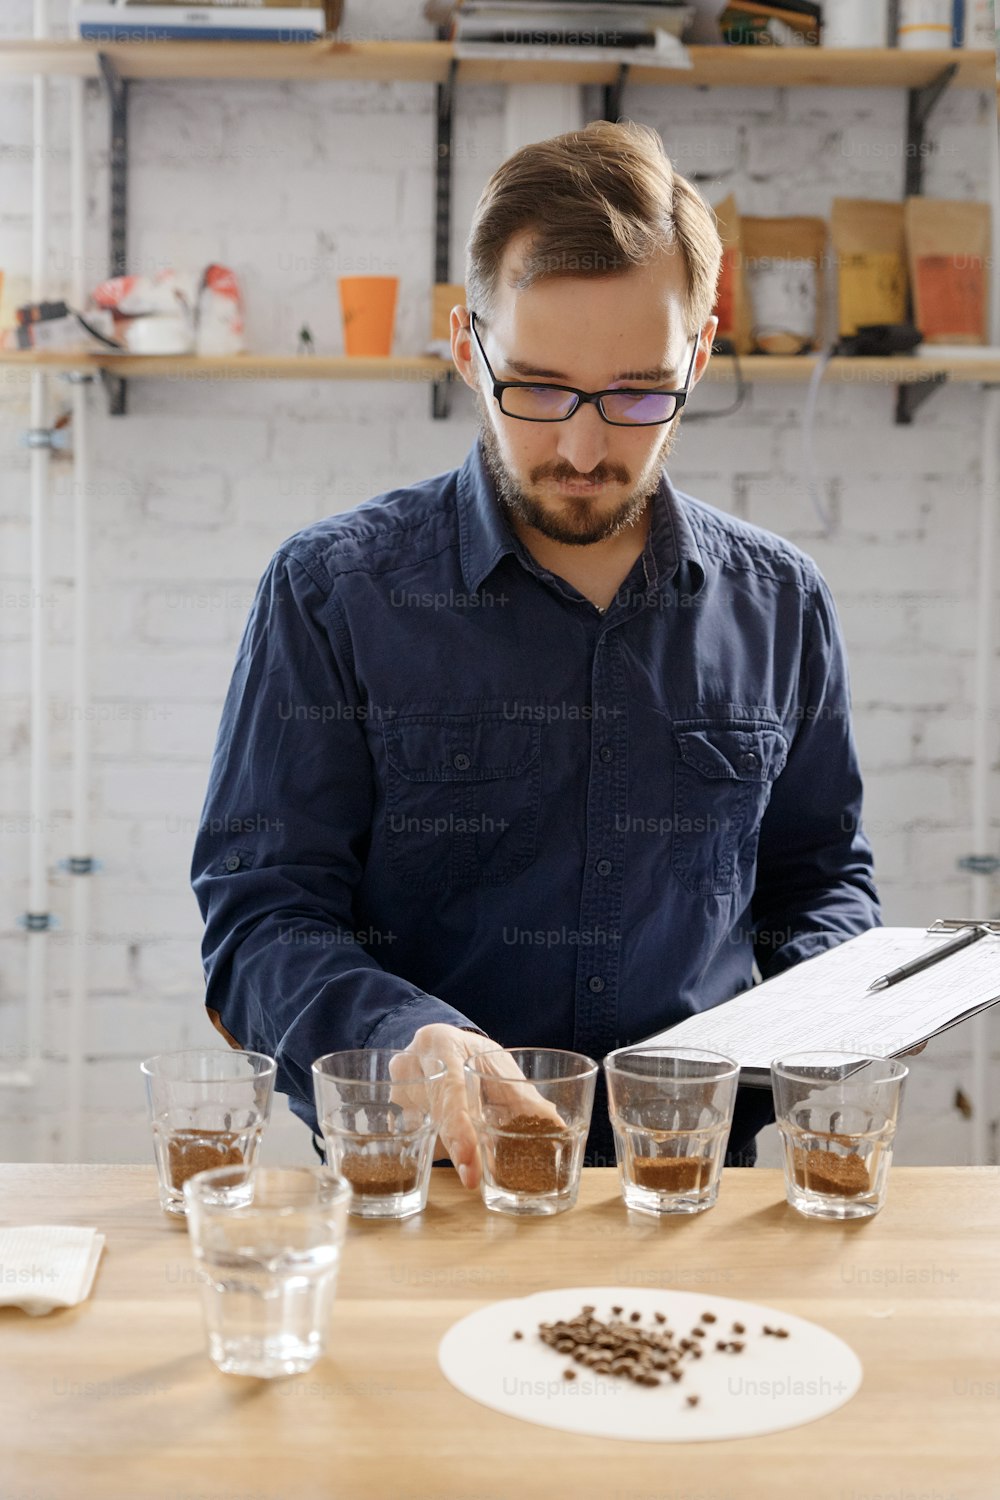 Ritratto dell'uomo che sente l'odore del caffè macinato freashly in tazze al caffè cupping esaminare. È in piedi vicino al muro bianco di fronte a file con tazze di vetro